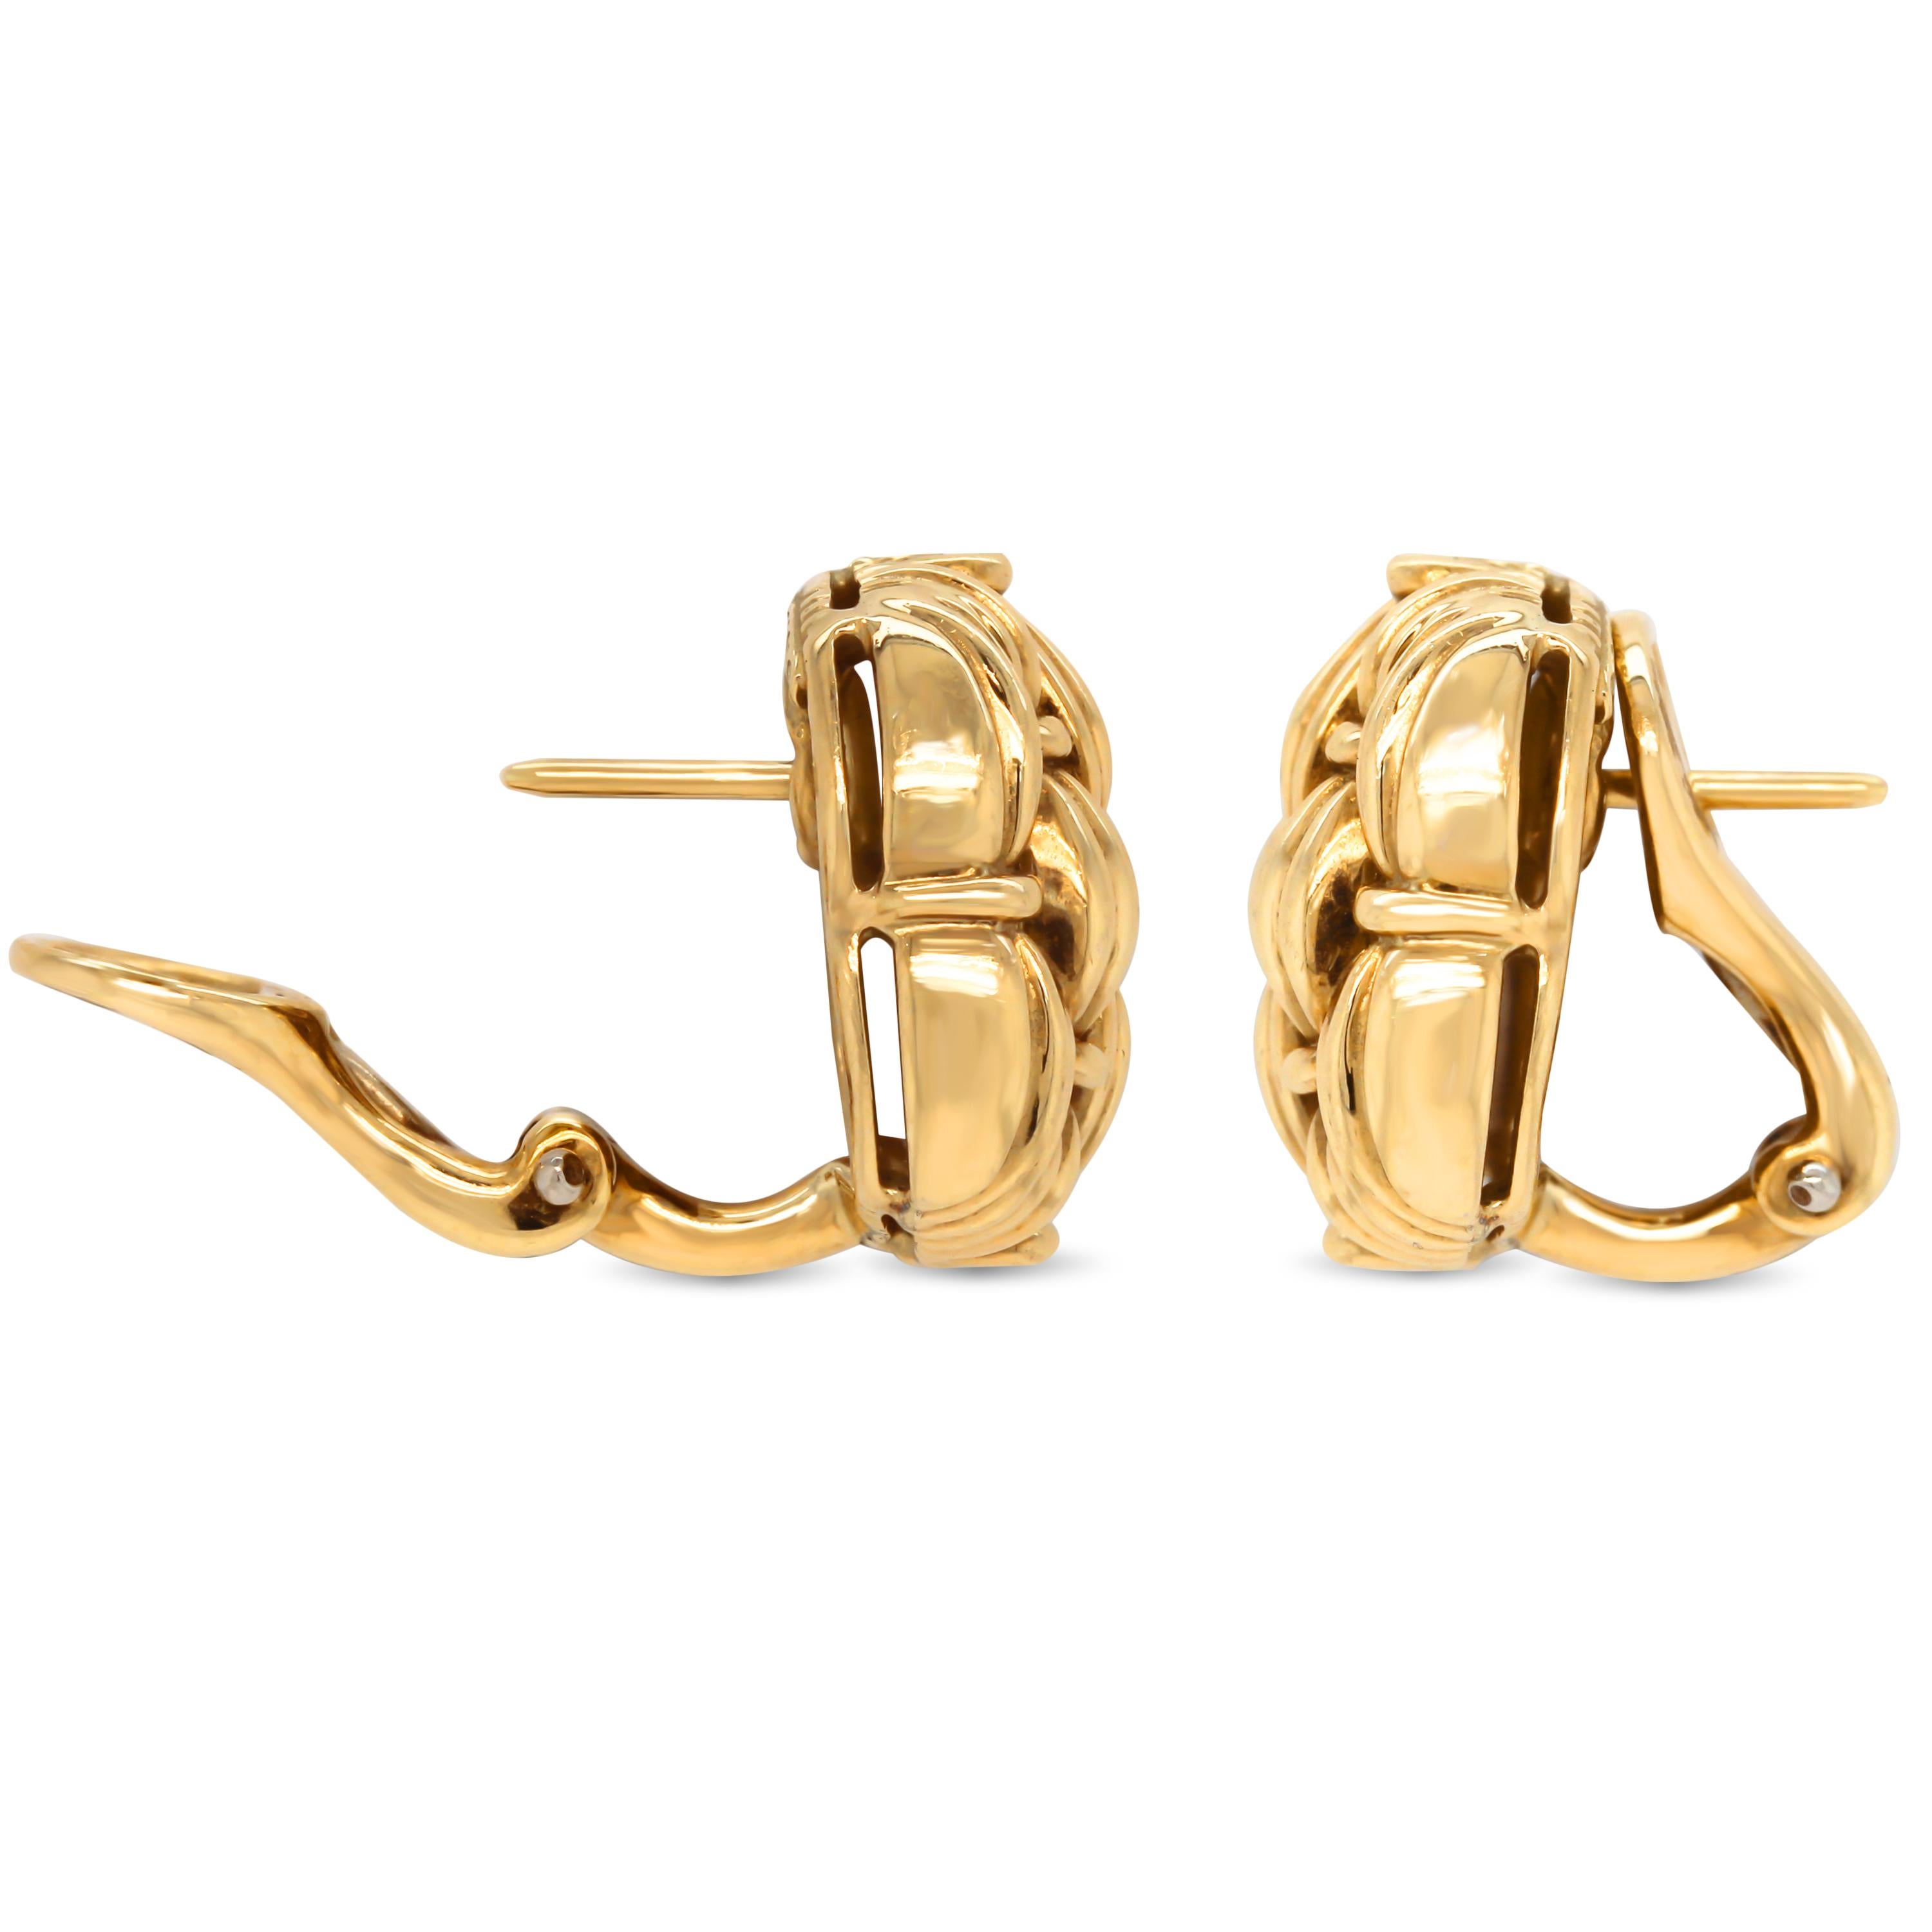 Tiffany & Co 18K Gelbgold Ohrringe

Die Ohrringe haben eine Post-Omega-Rückseite.

0.60 Zoll Länge und 0,50 Zoll Breite.

Signiert Tiffany & Co